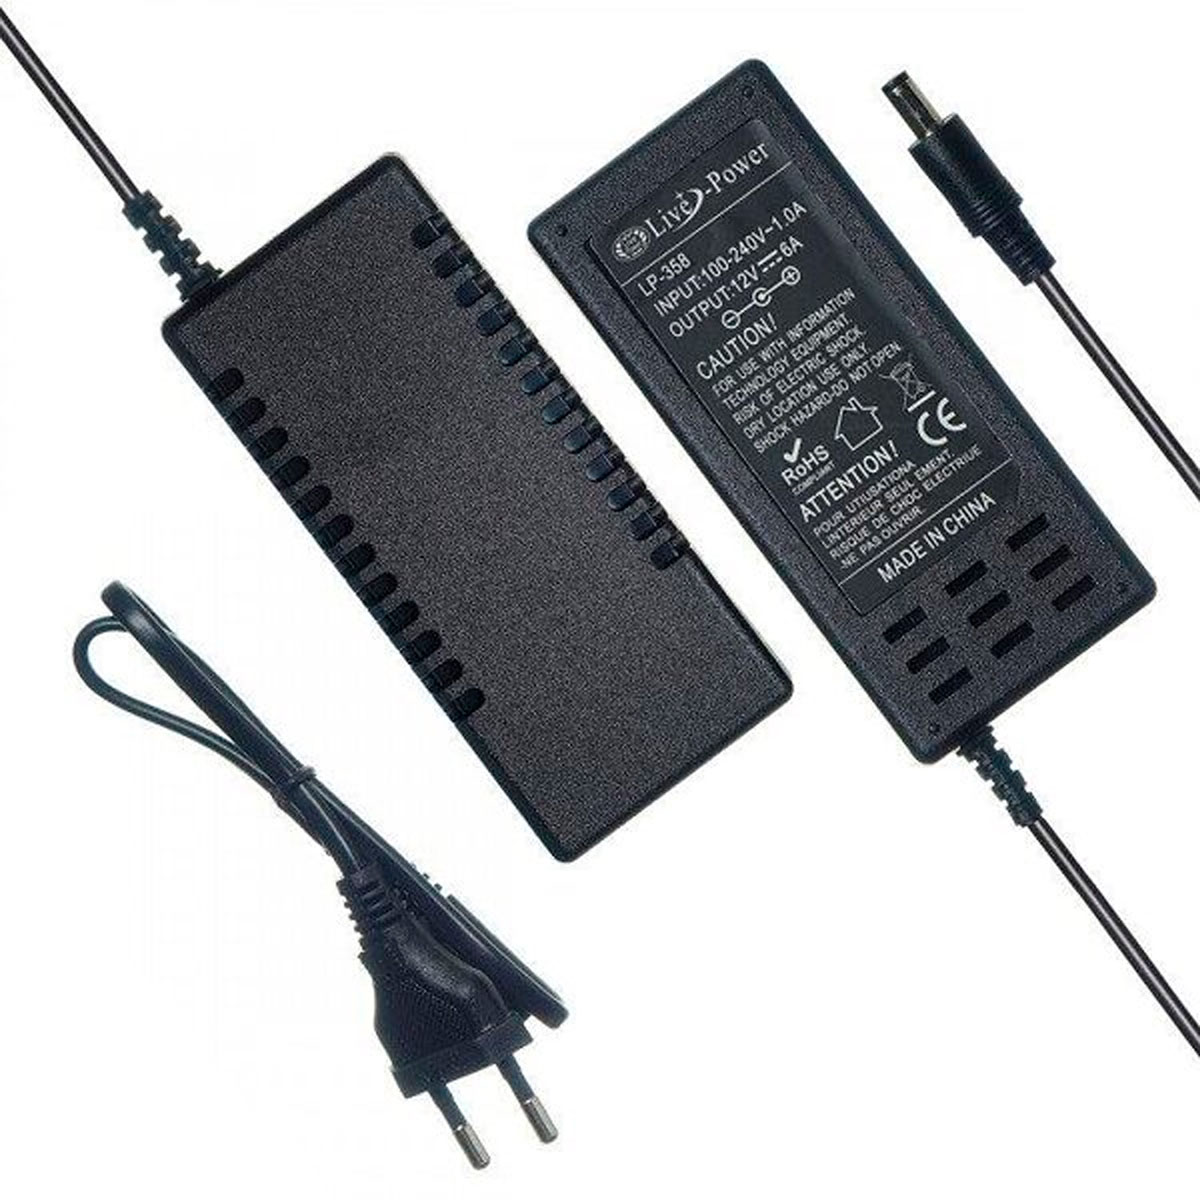 Блок питания универсальный Live Power LP358, 12V-6A, штекер 5.5 на 2.5 мм, цвет черный